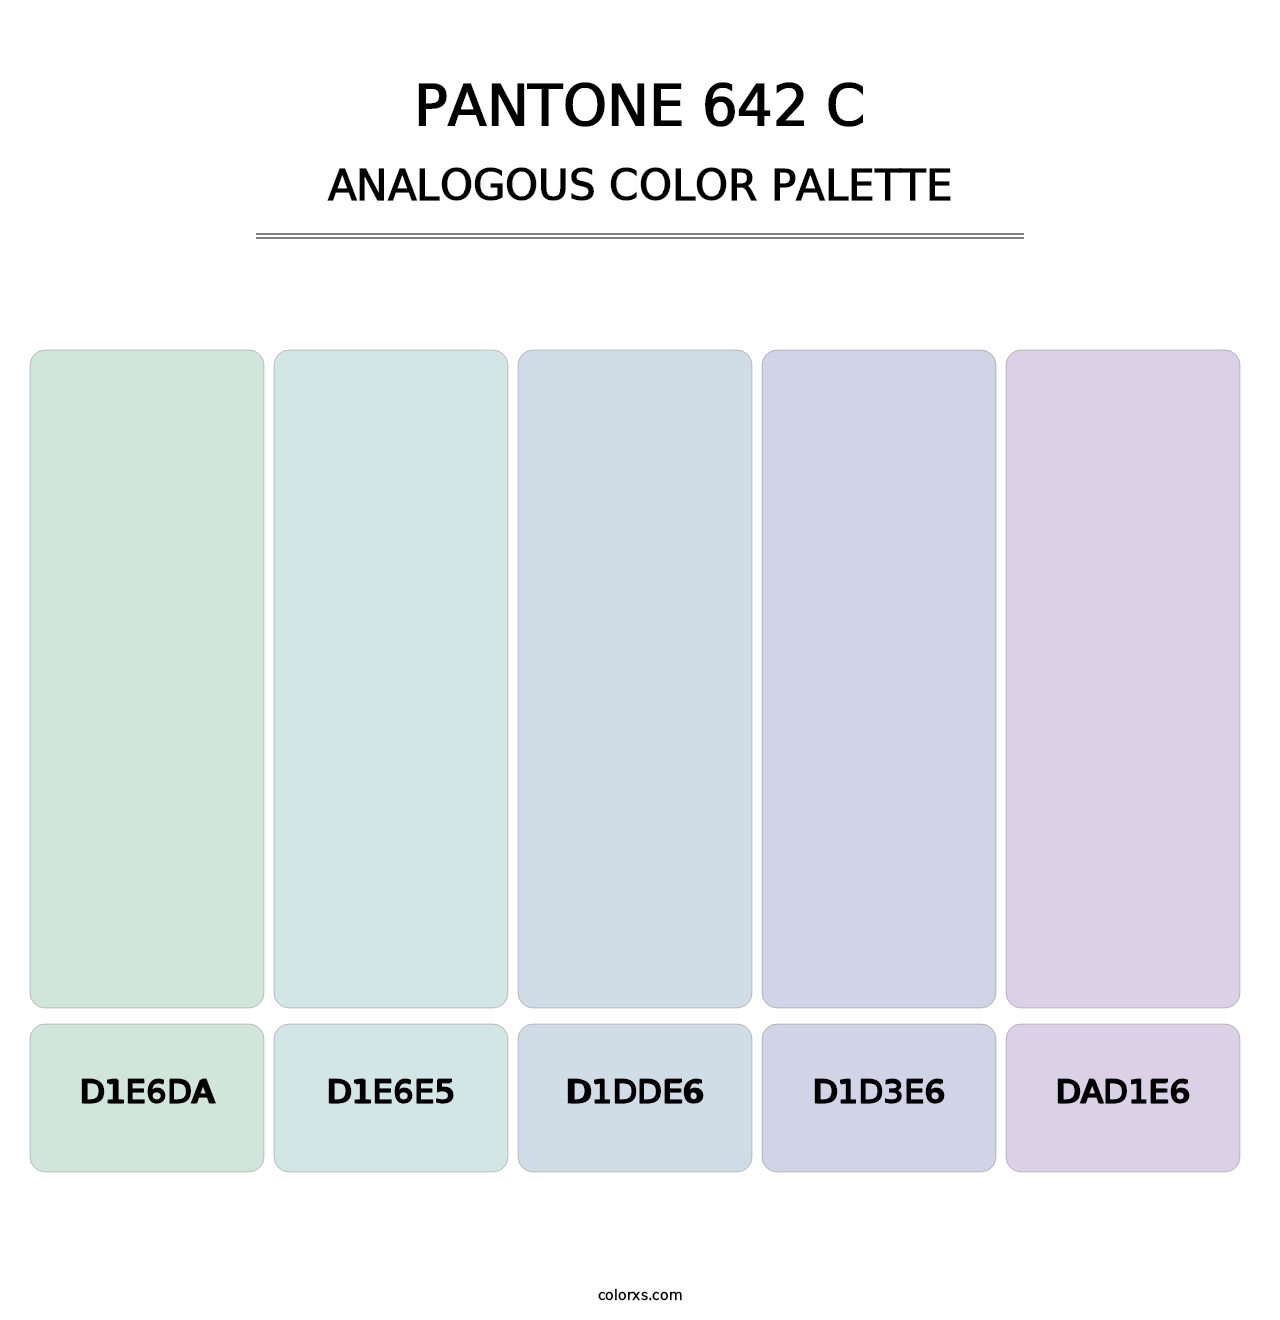 PANTONE 642 C - Analogous Color Palette